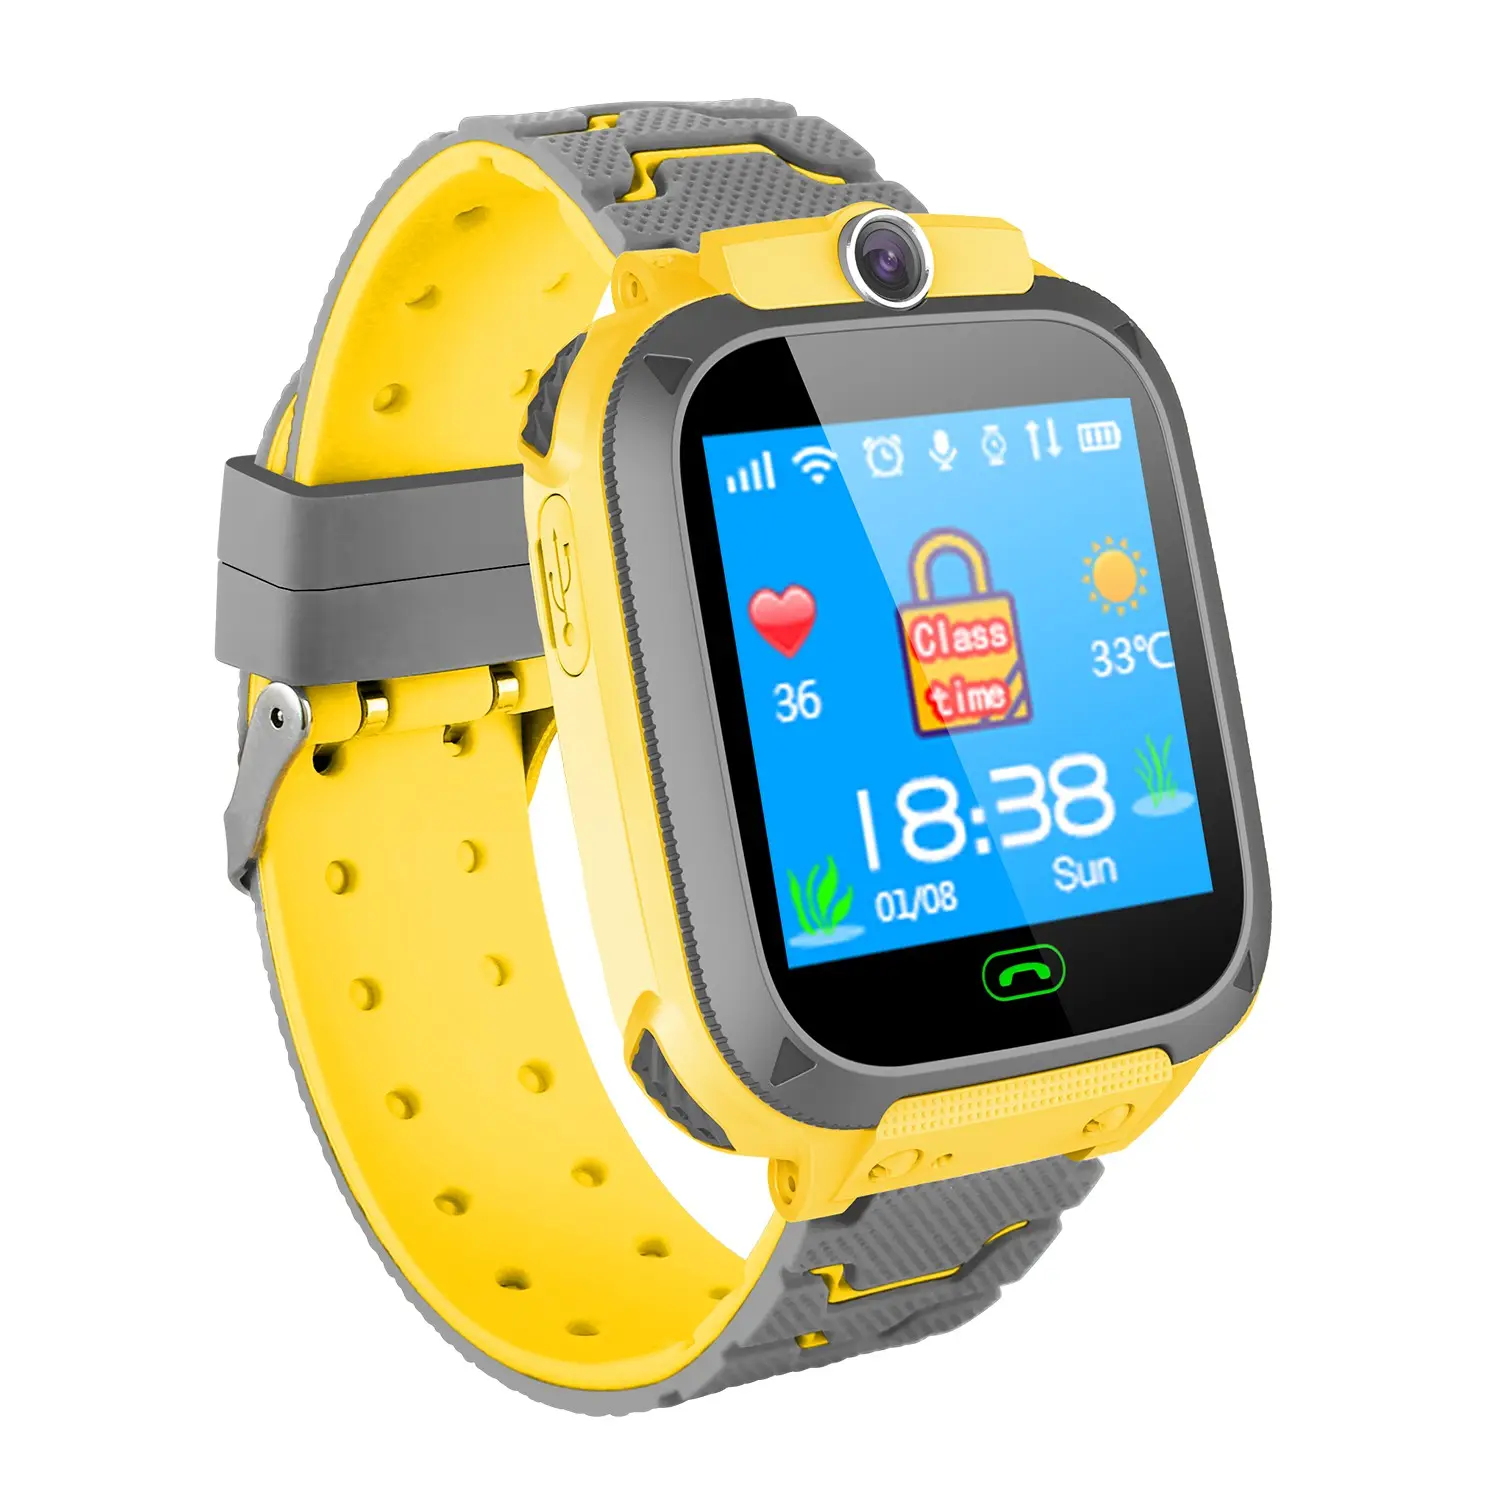 Lemfo-Montre connectée, moniteur d'activité physique, smartwatch, avec grand écran entièrement tactile, 4g, Gps, wi-fi, pour Android